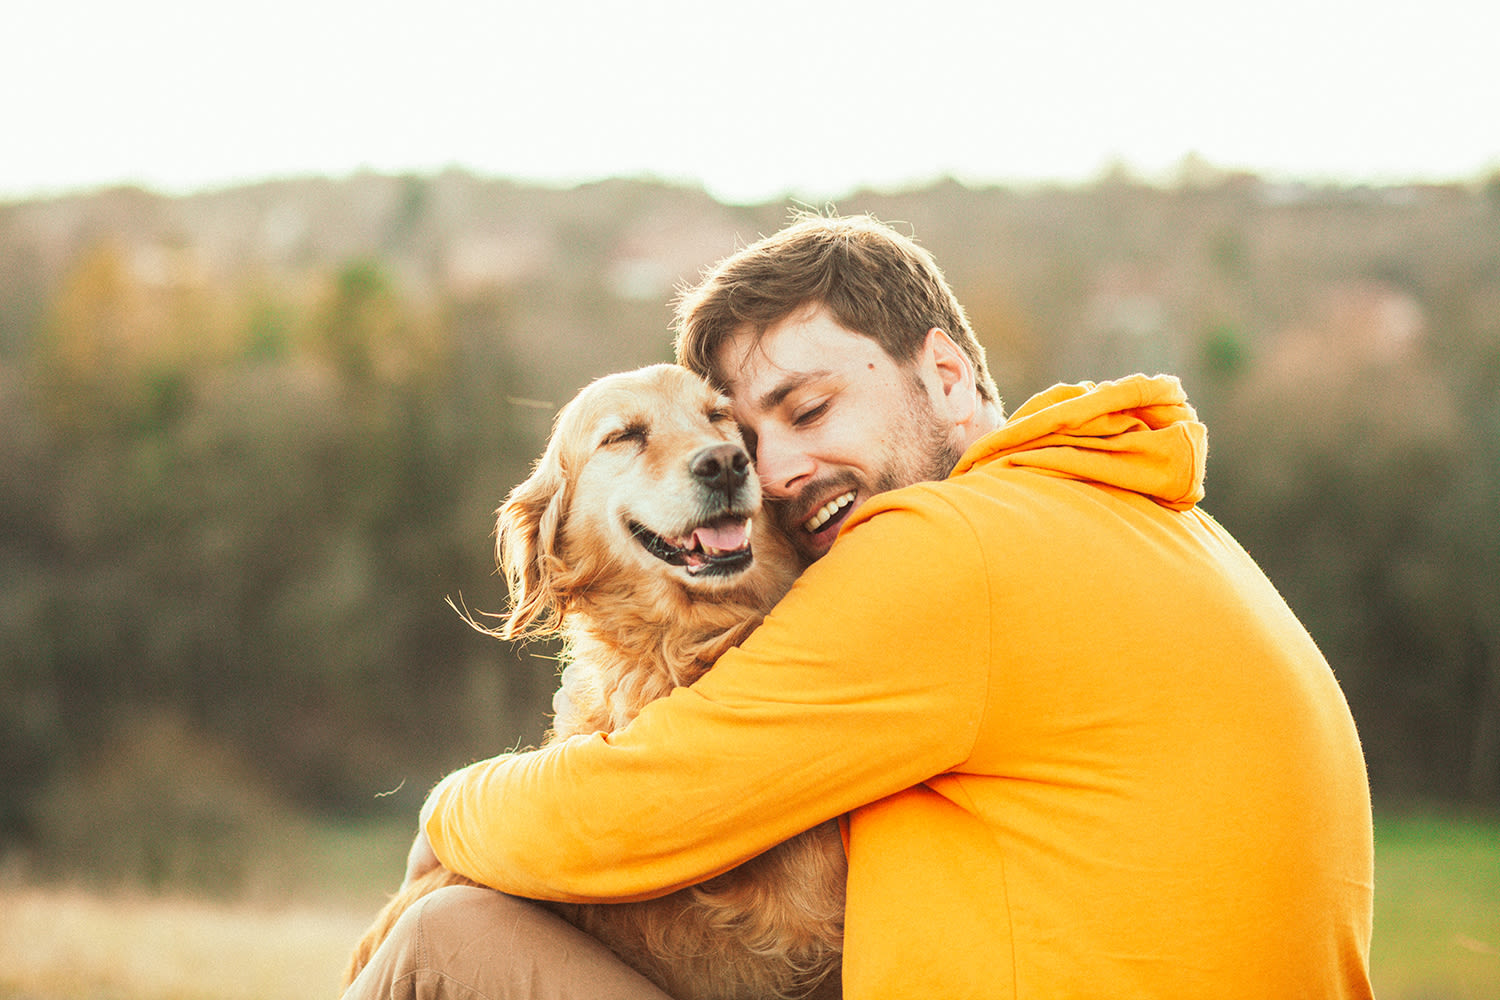 La joie chez le chien : comment se comporte un chien heureux ?